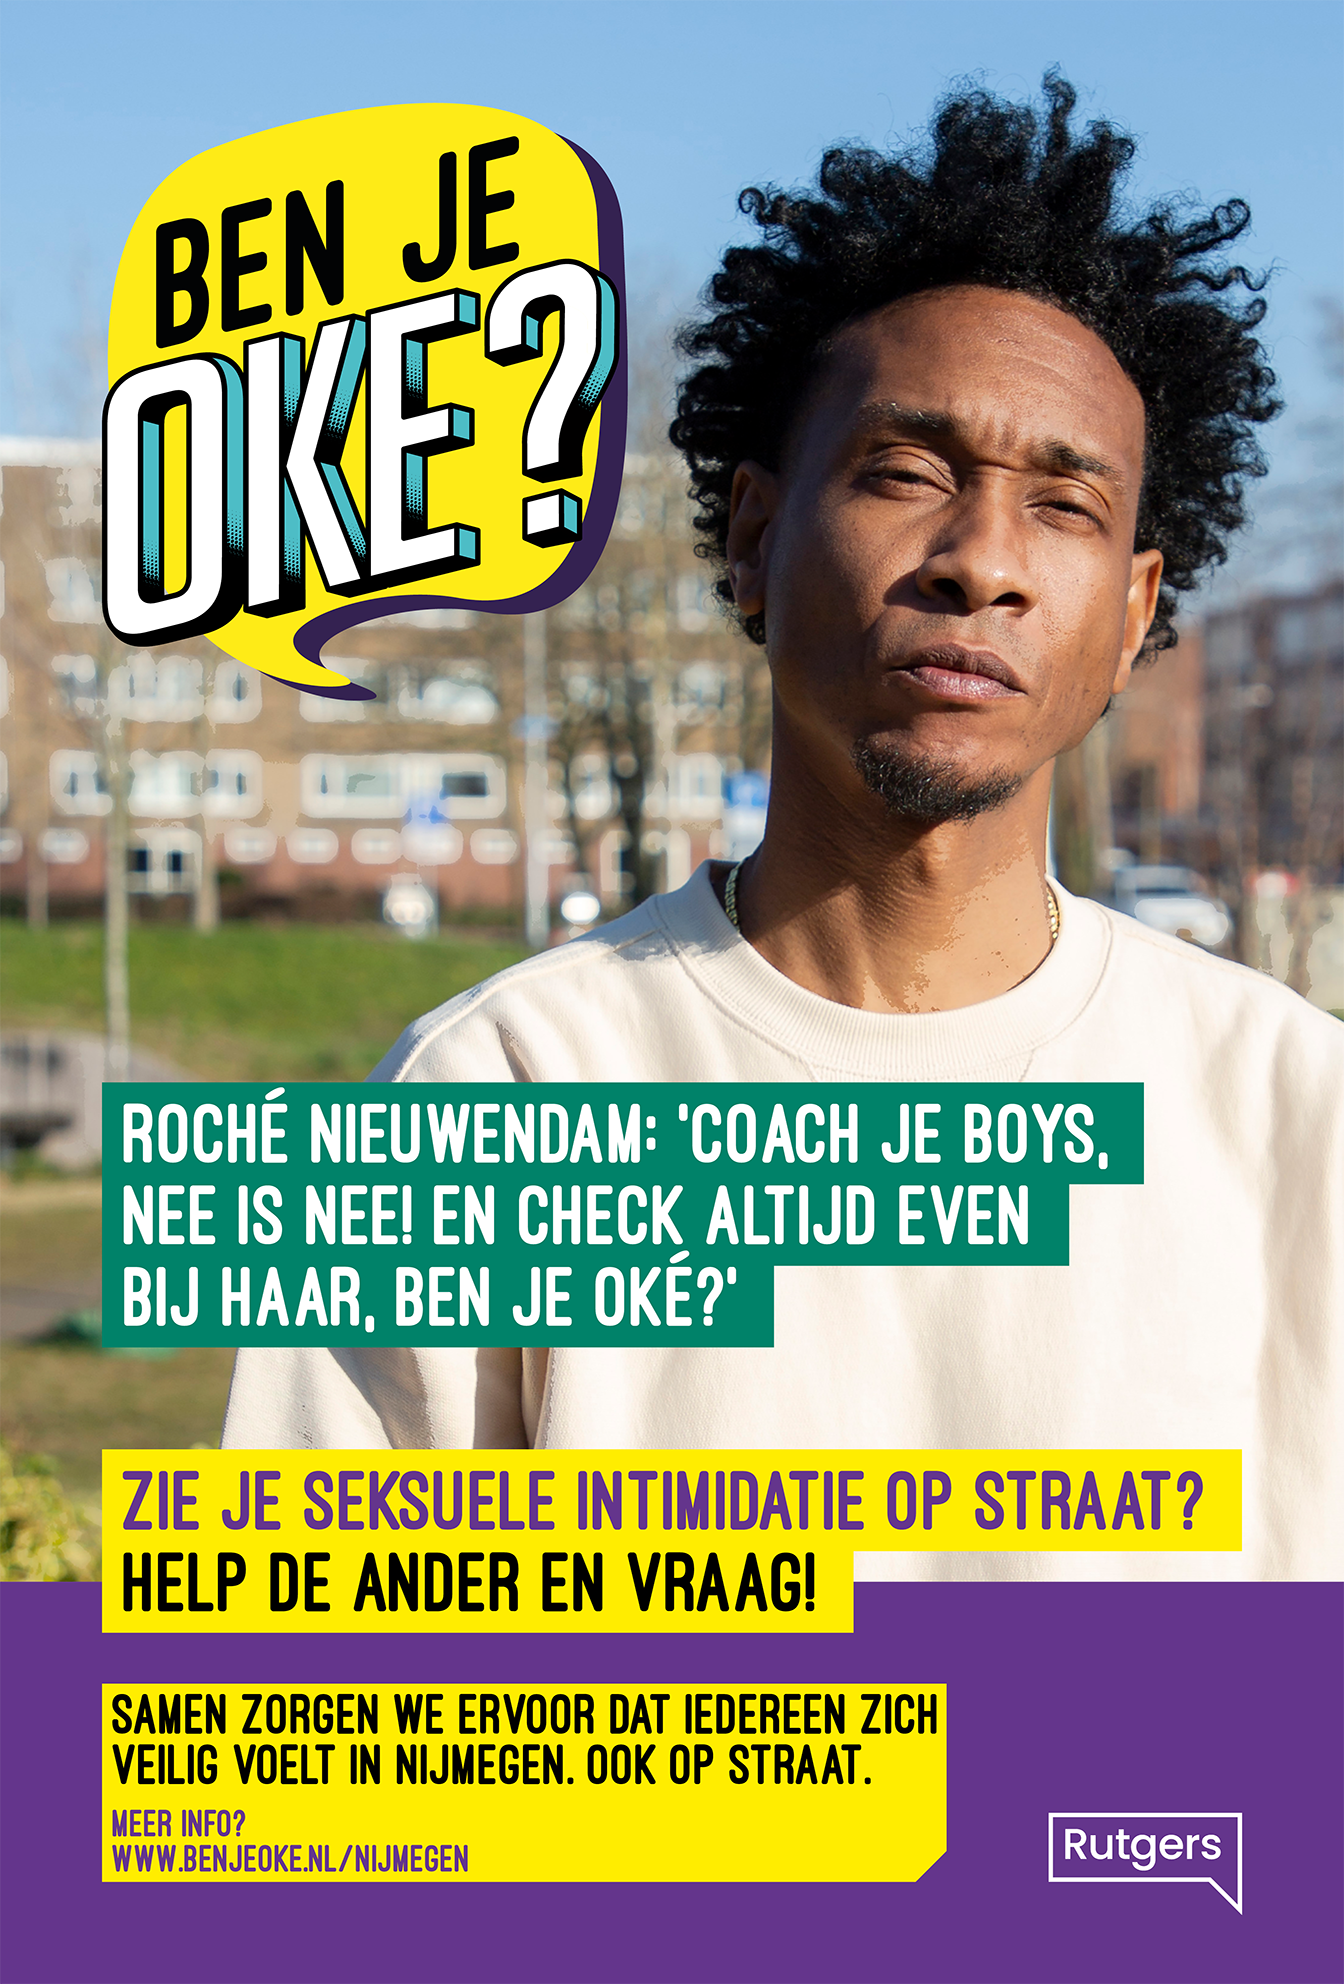 Nijmegen: Coach je boys: 'nee is nee!'